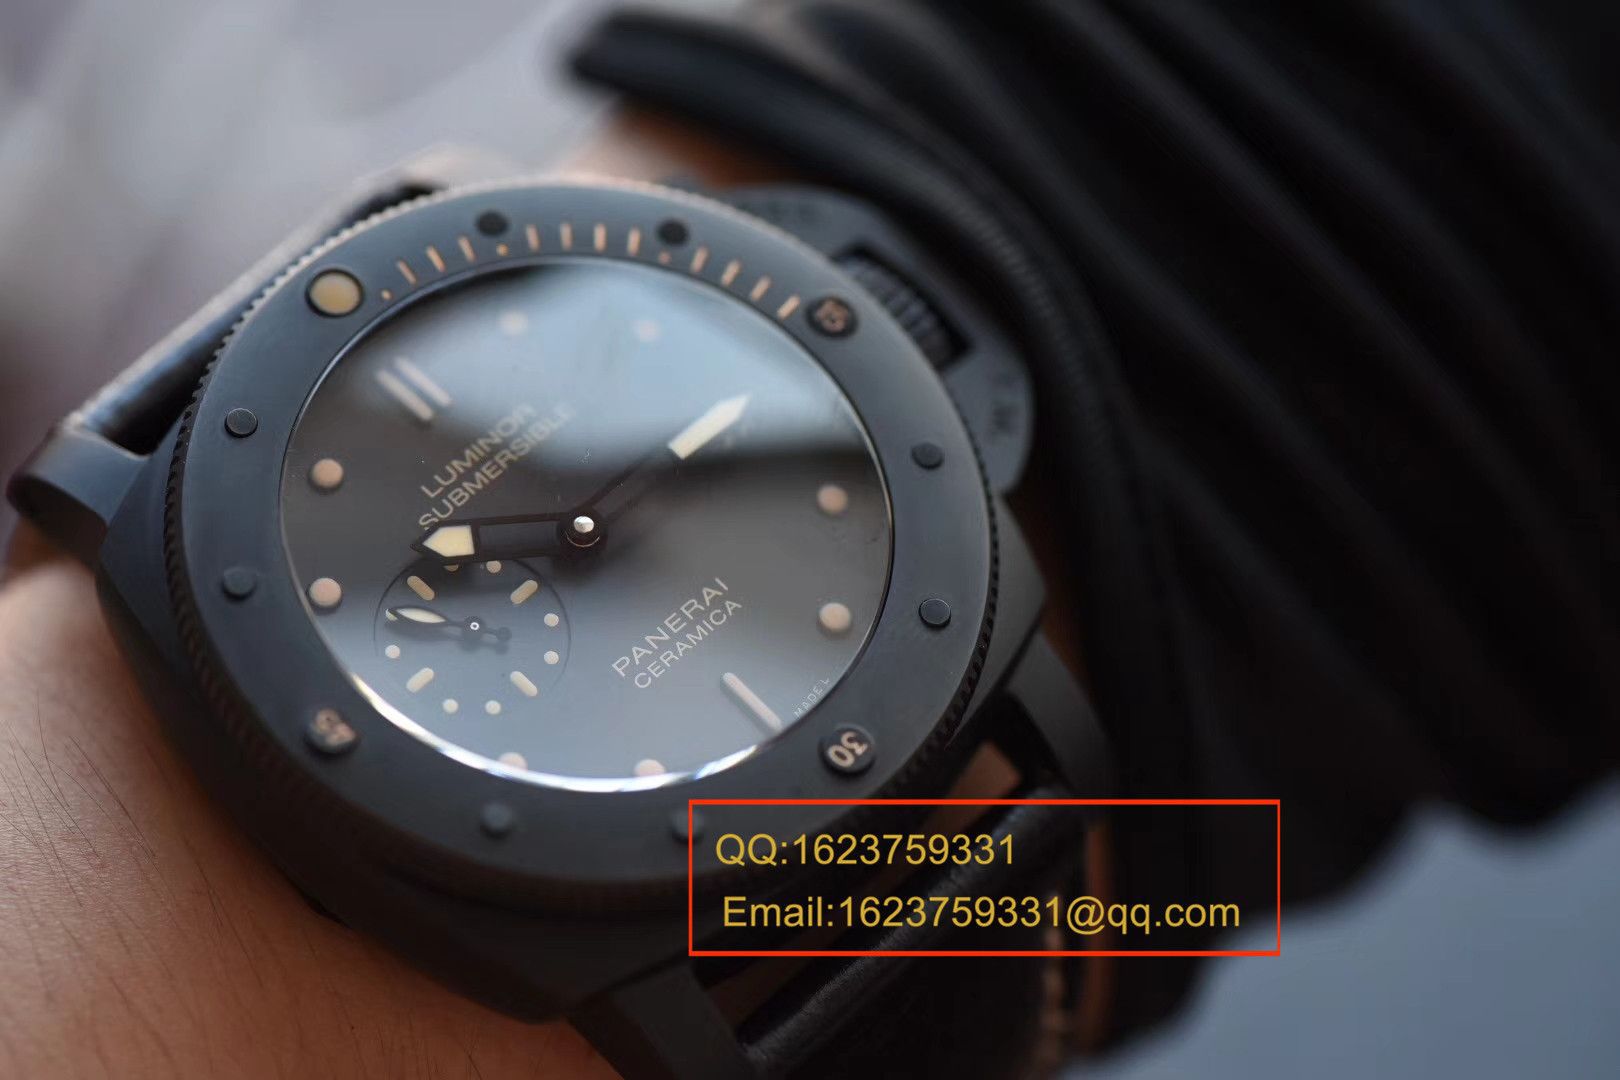 视频评测沛纳海特别版腕表系列PAM 00508腕表【VS一比一顶级复刻手表】VS 508 V2 升级版 